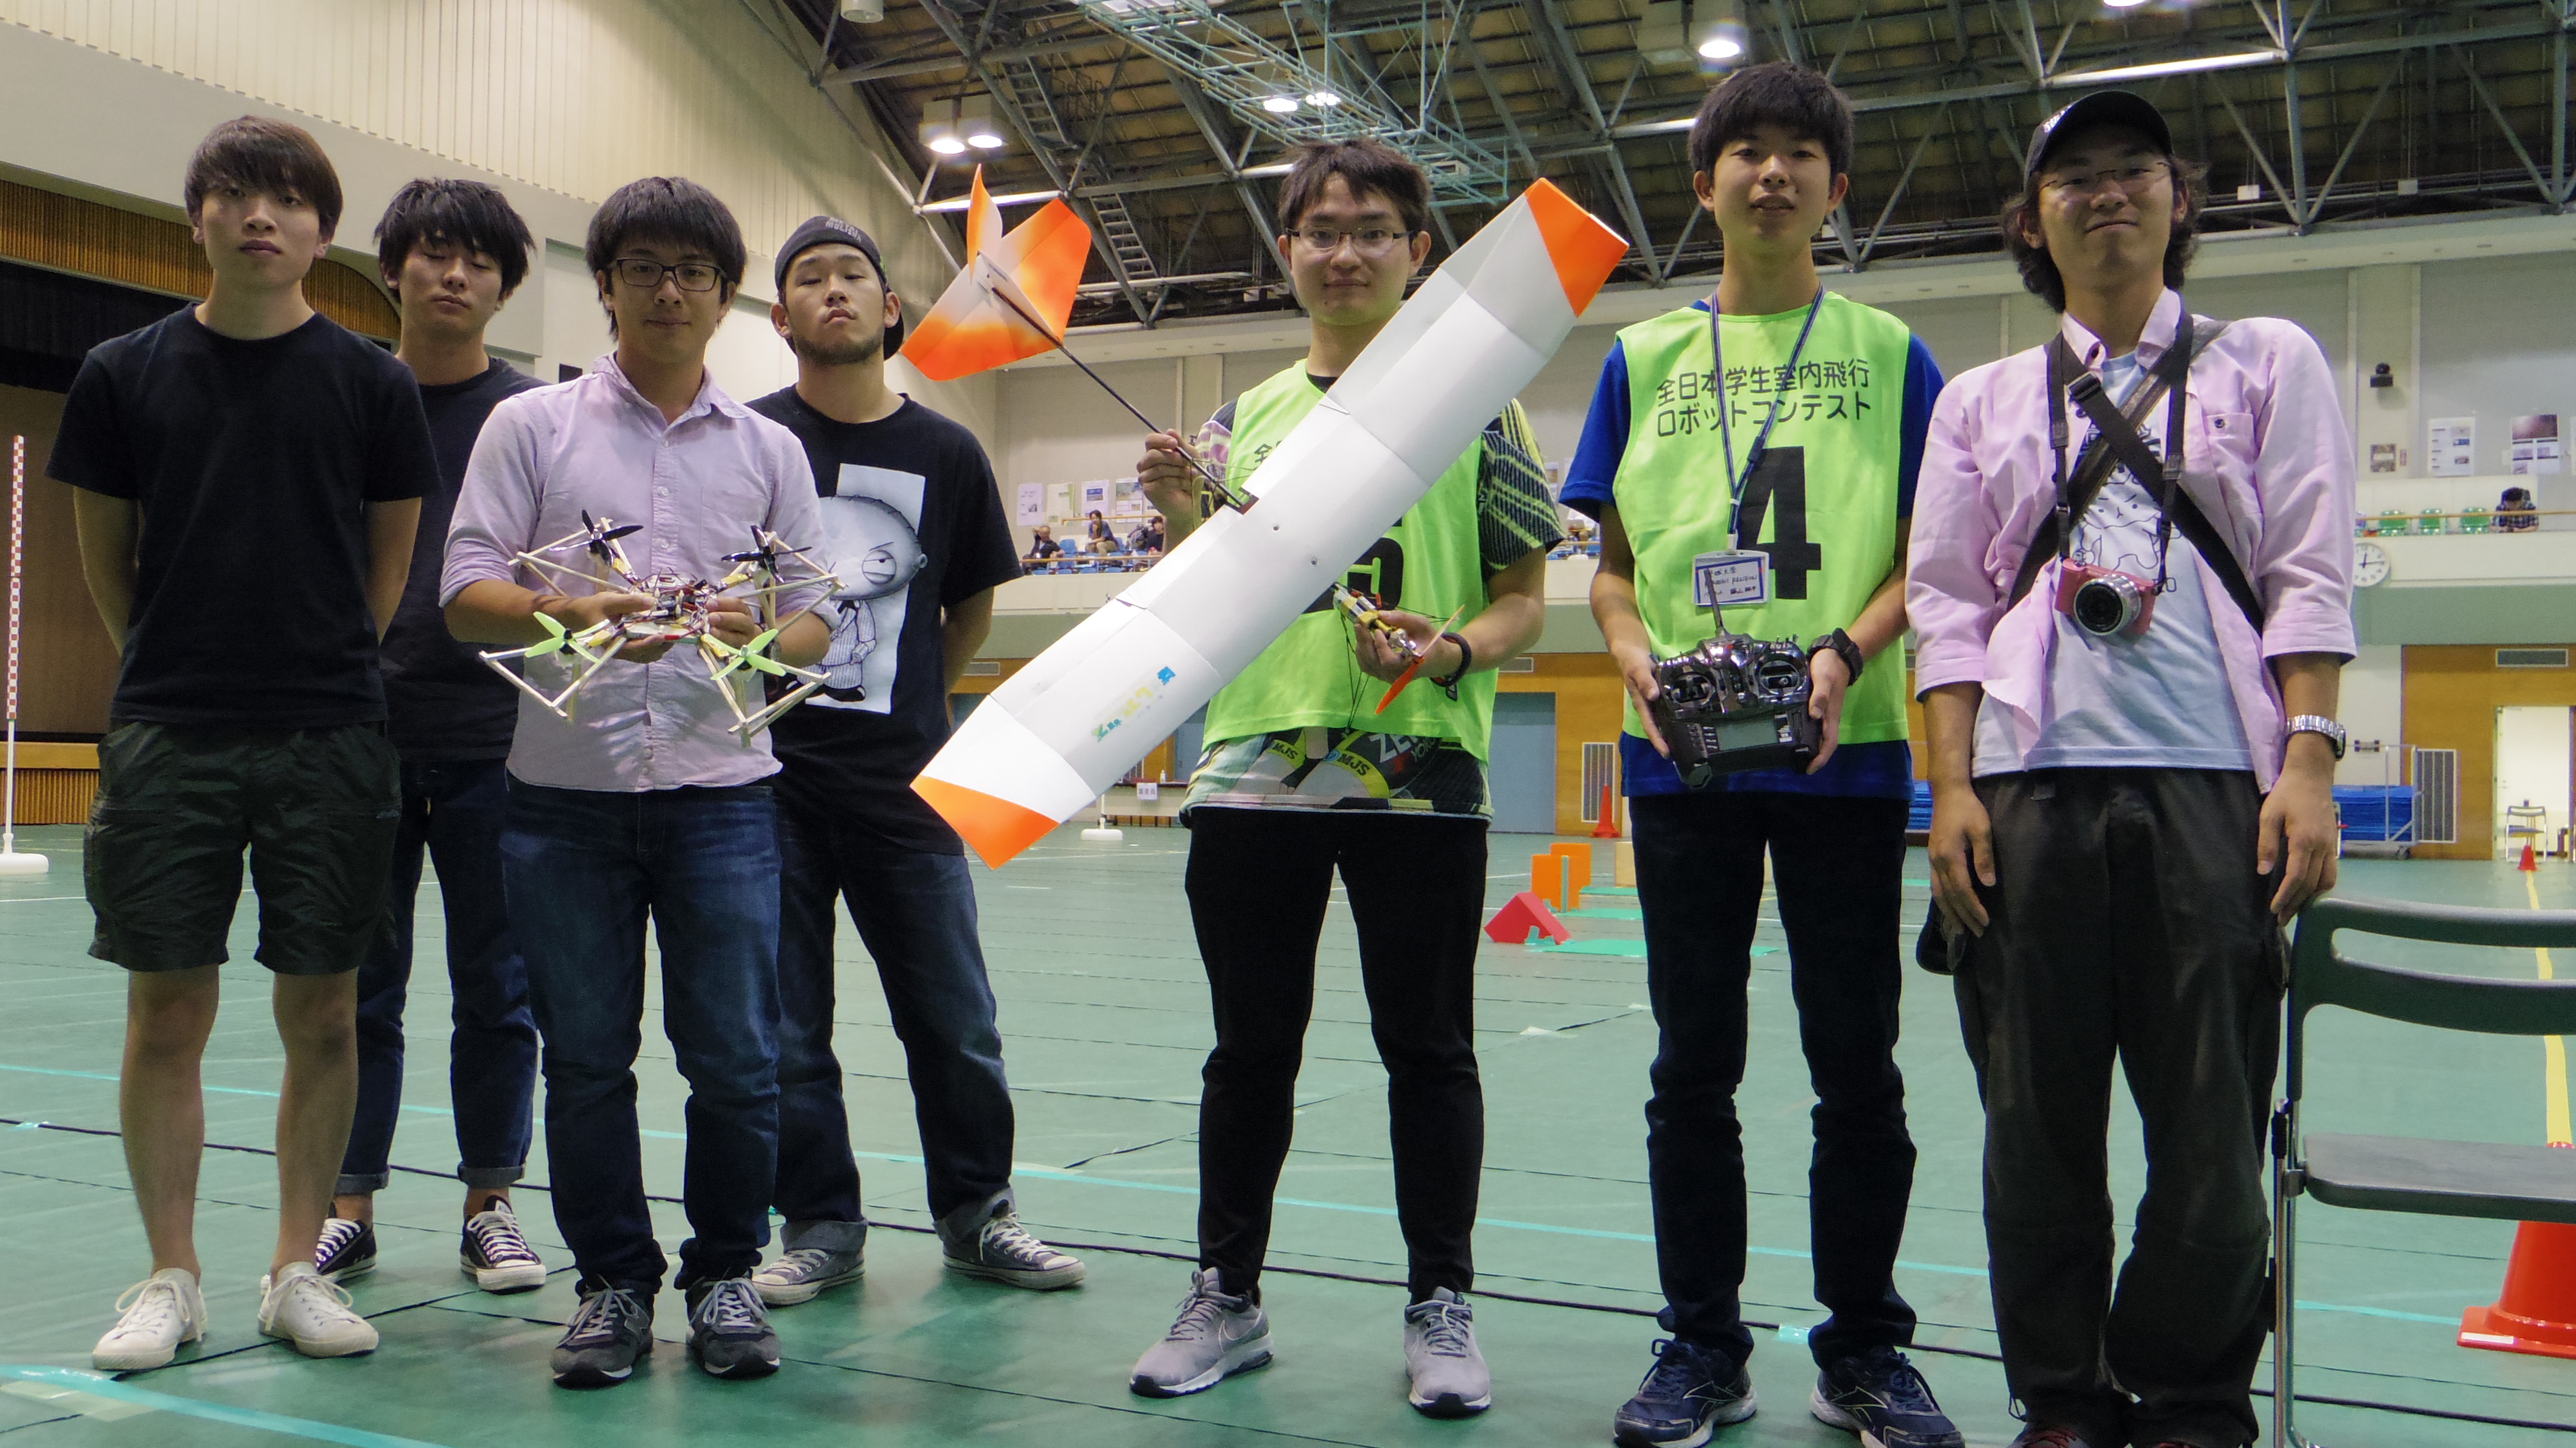 「第13回全日本学生室内飛行ロボットコンテスト」に参加しました